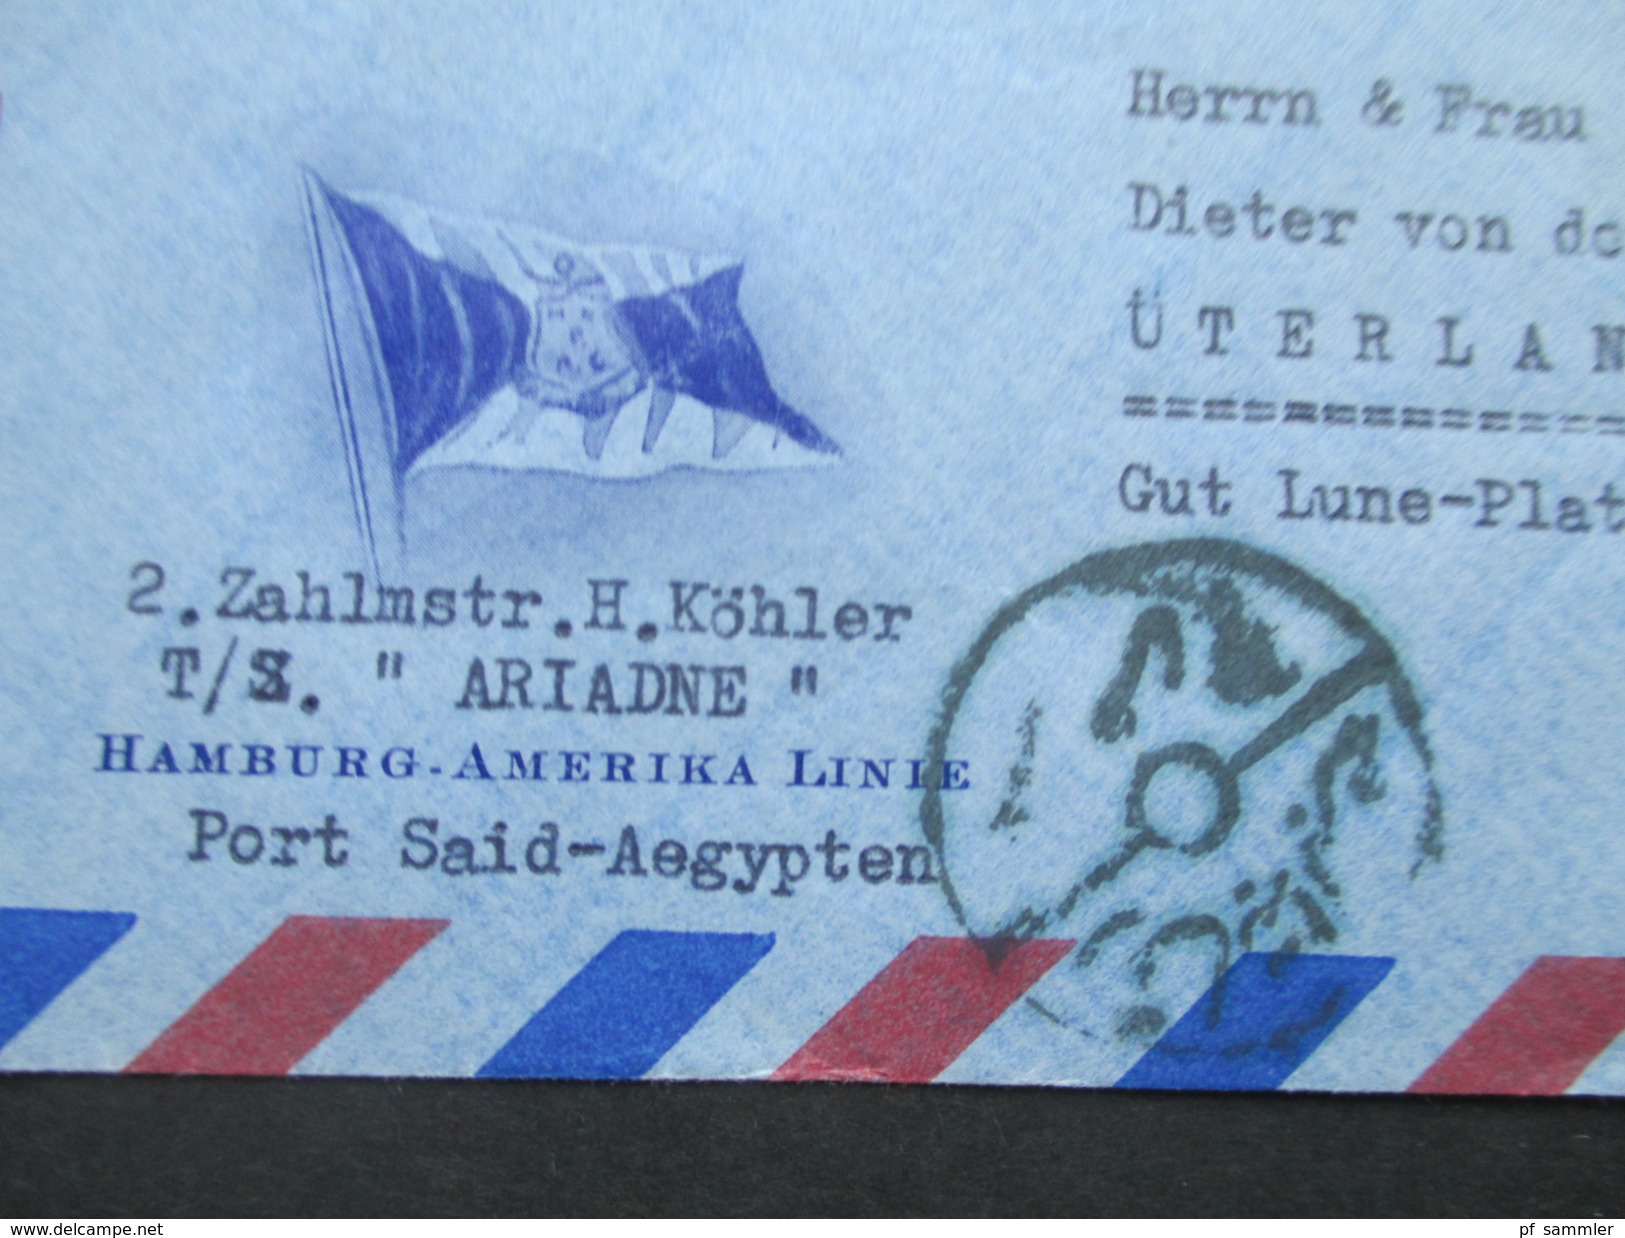 Ägypten 1950er Jahre Luftpostbrief / Schiffspost Hamburg - Amerika Linie. TS Ariadne. Nach Üterlande.Interessanter Beleg - Lettres & Documents